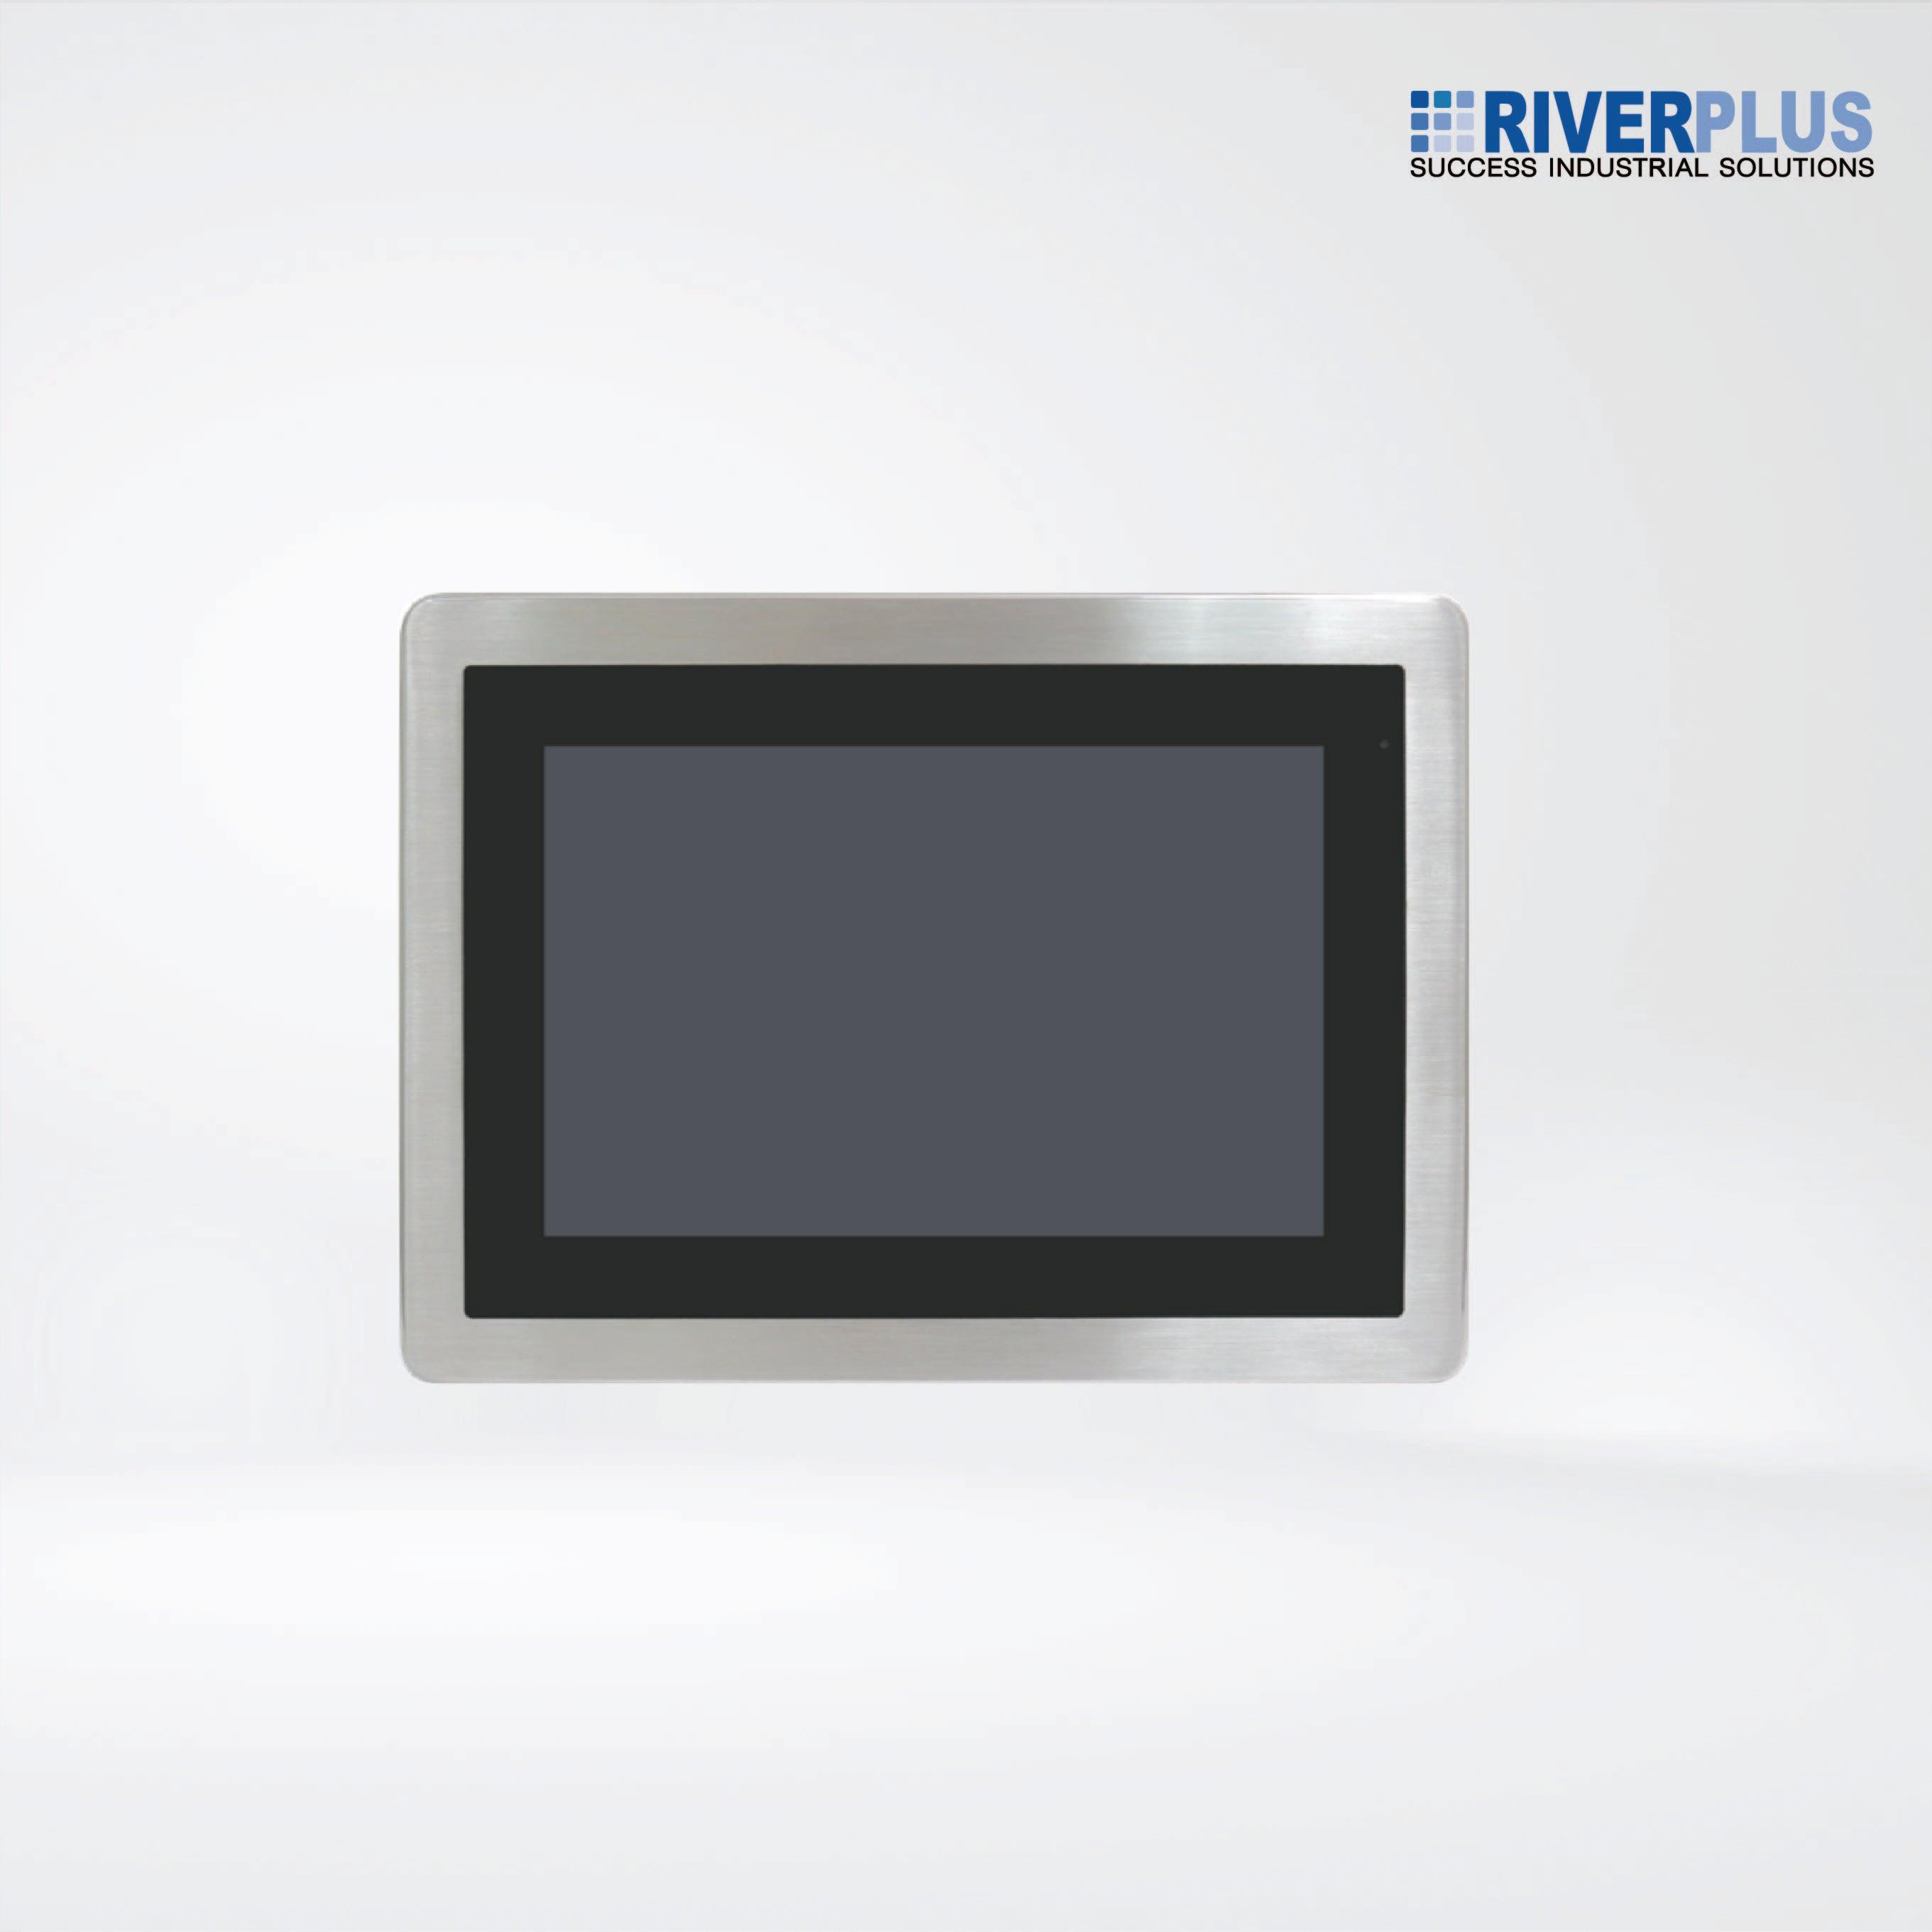 ViTAM-110RH 10.1″ New Gen. IP66/IP69K Stainless Steel Display - Riverplus